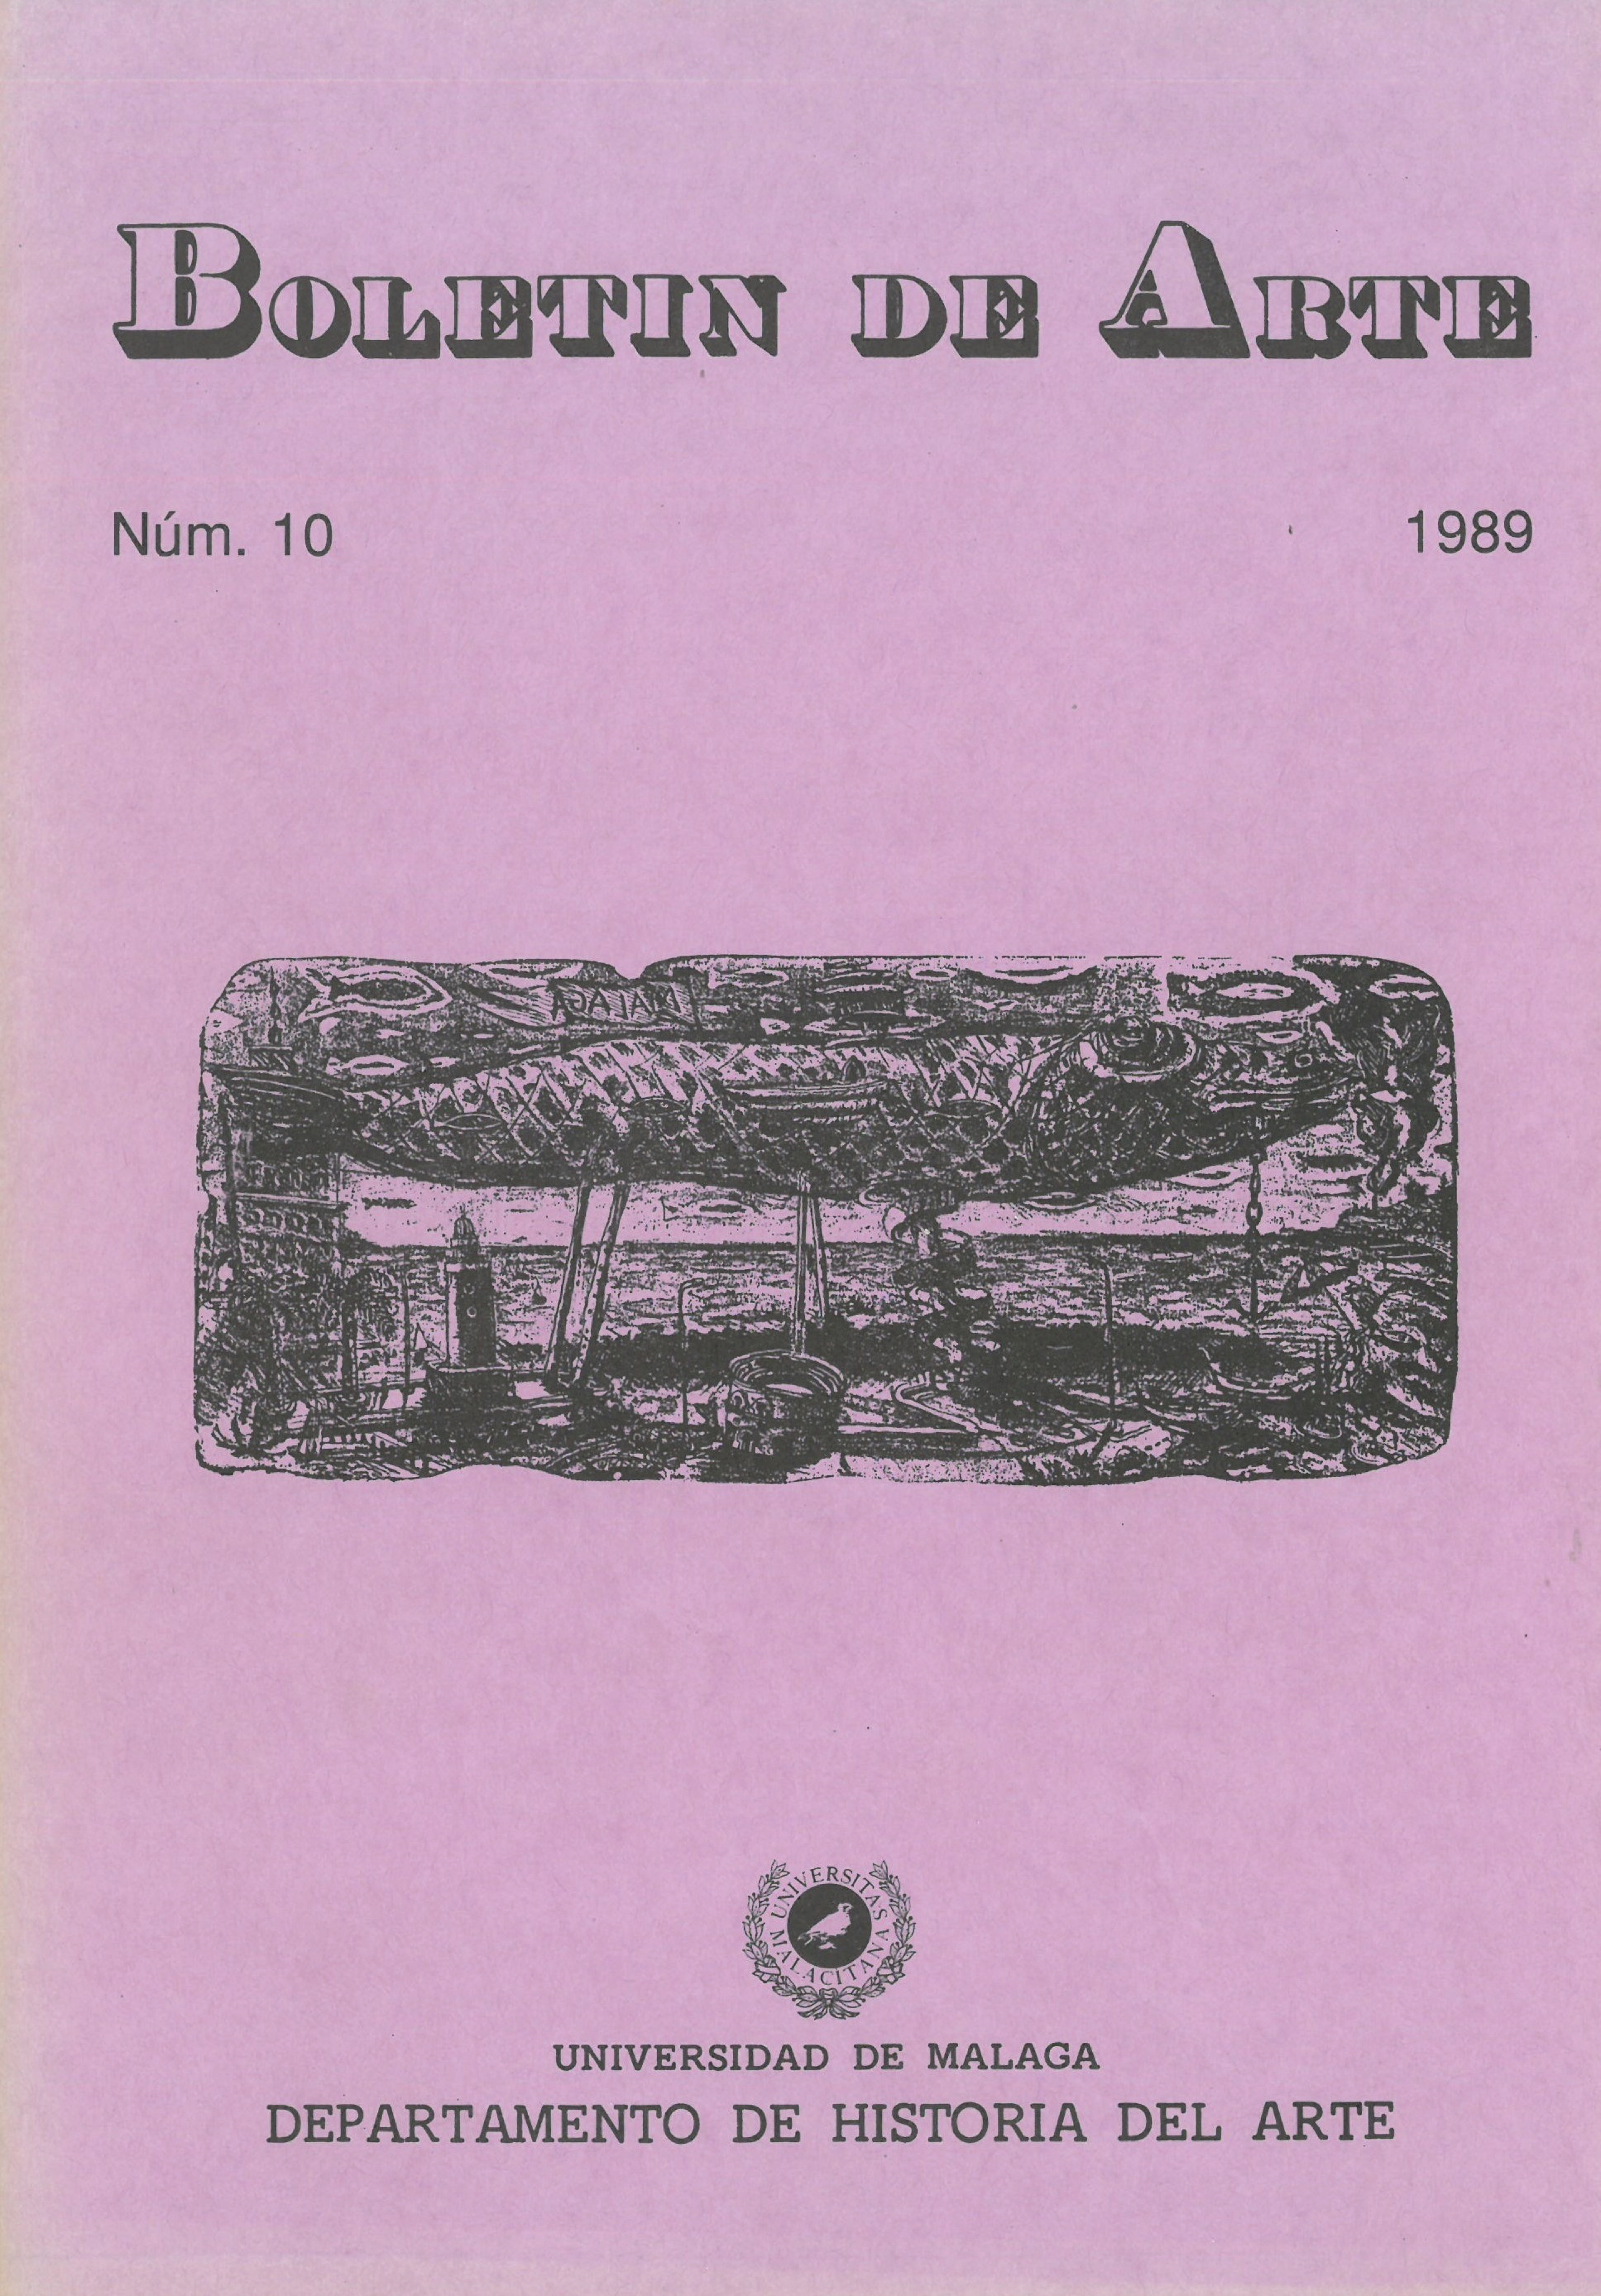 					View No. 10 (1989)
				